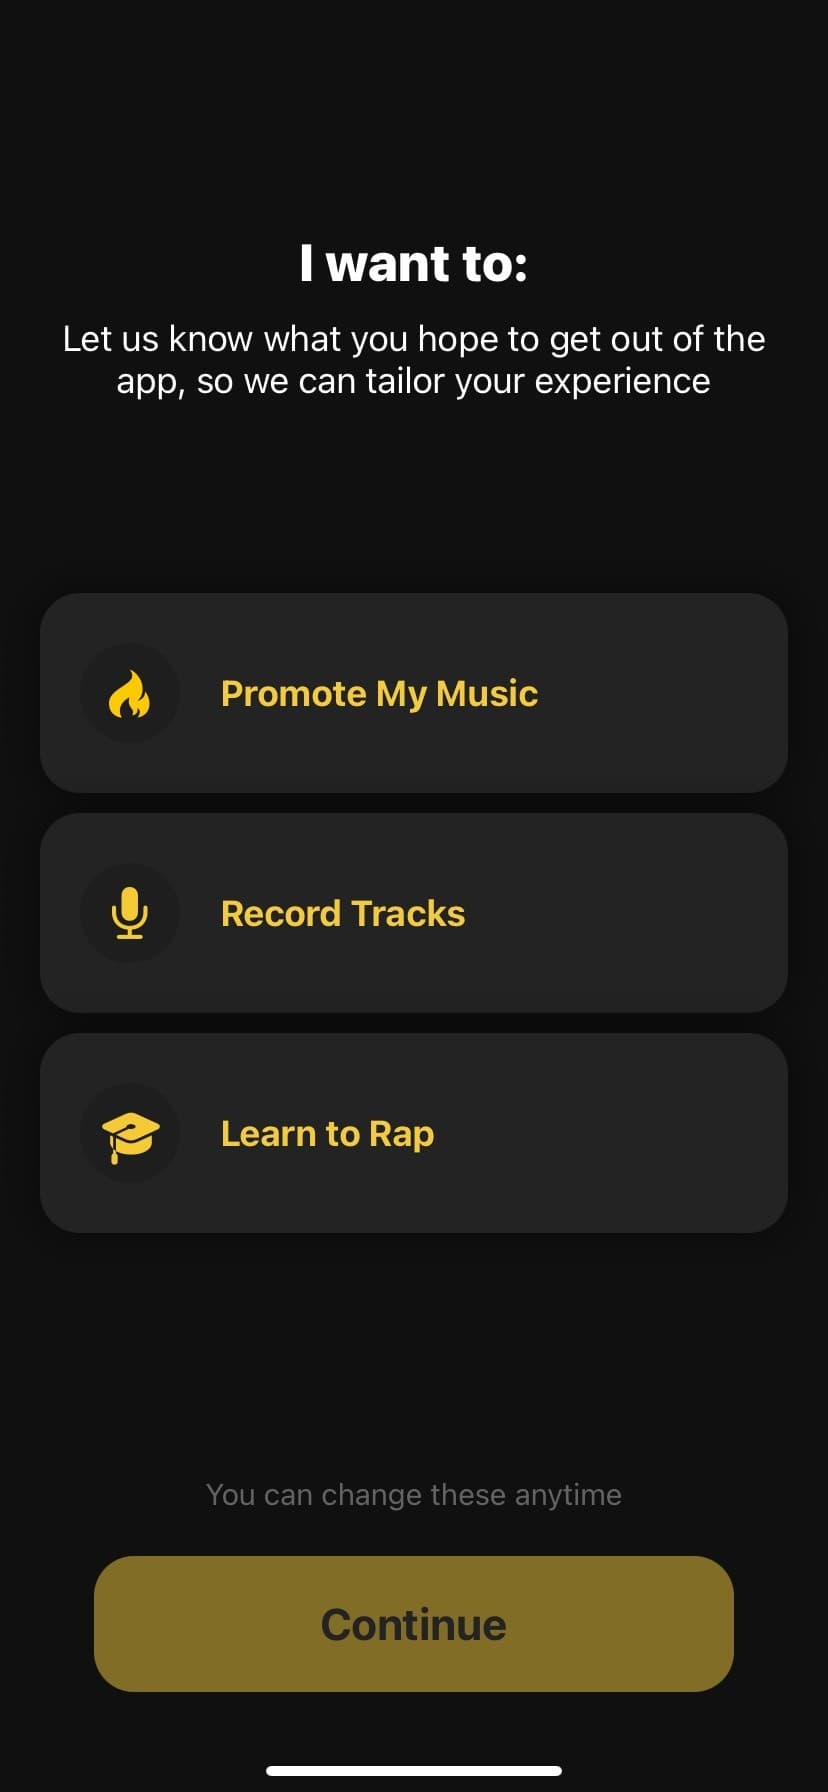 Hướng dẫn cách sử dụng ứng dụng Rap Fame